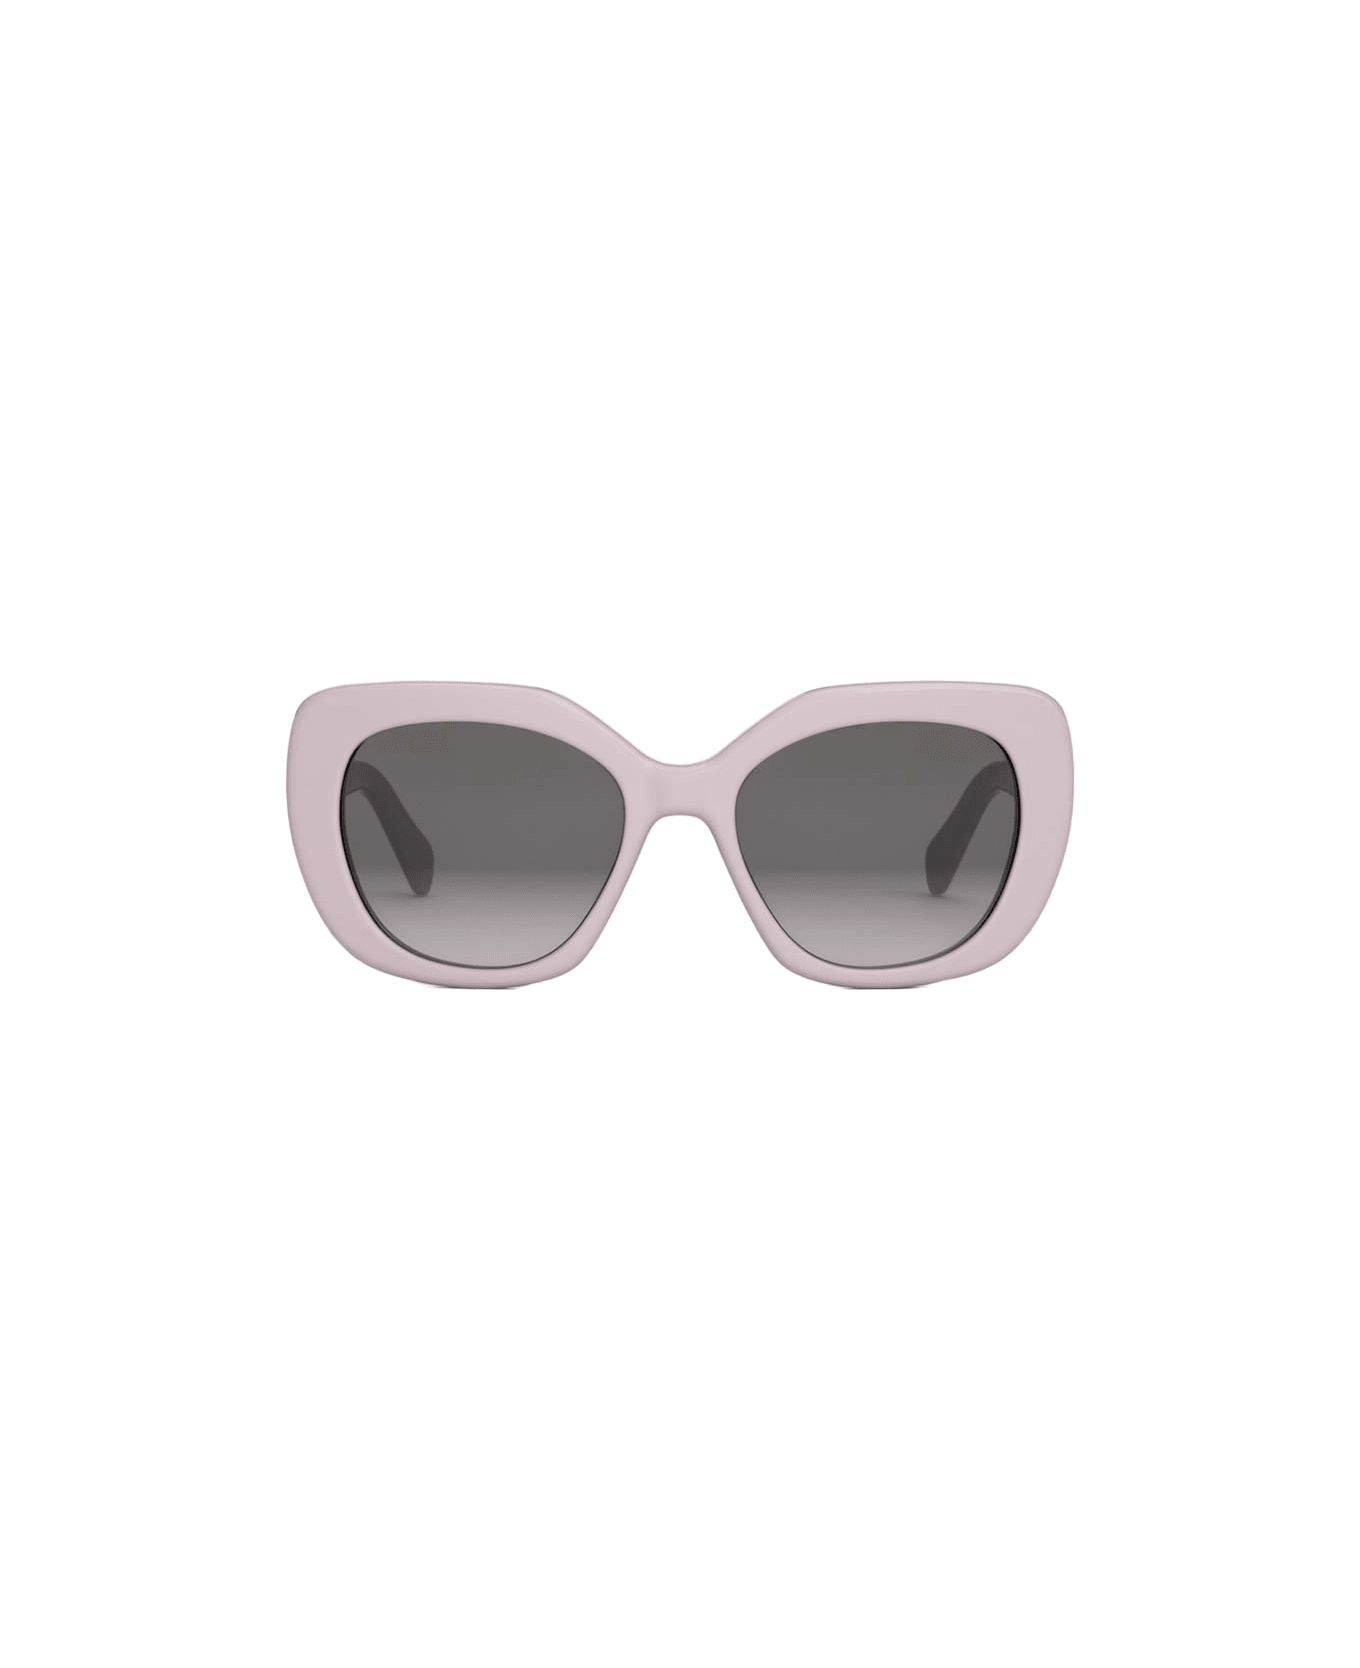 Celine Sunglasses - Rosa chiaro/Grigio sfumato